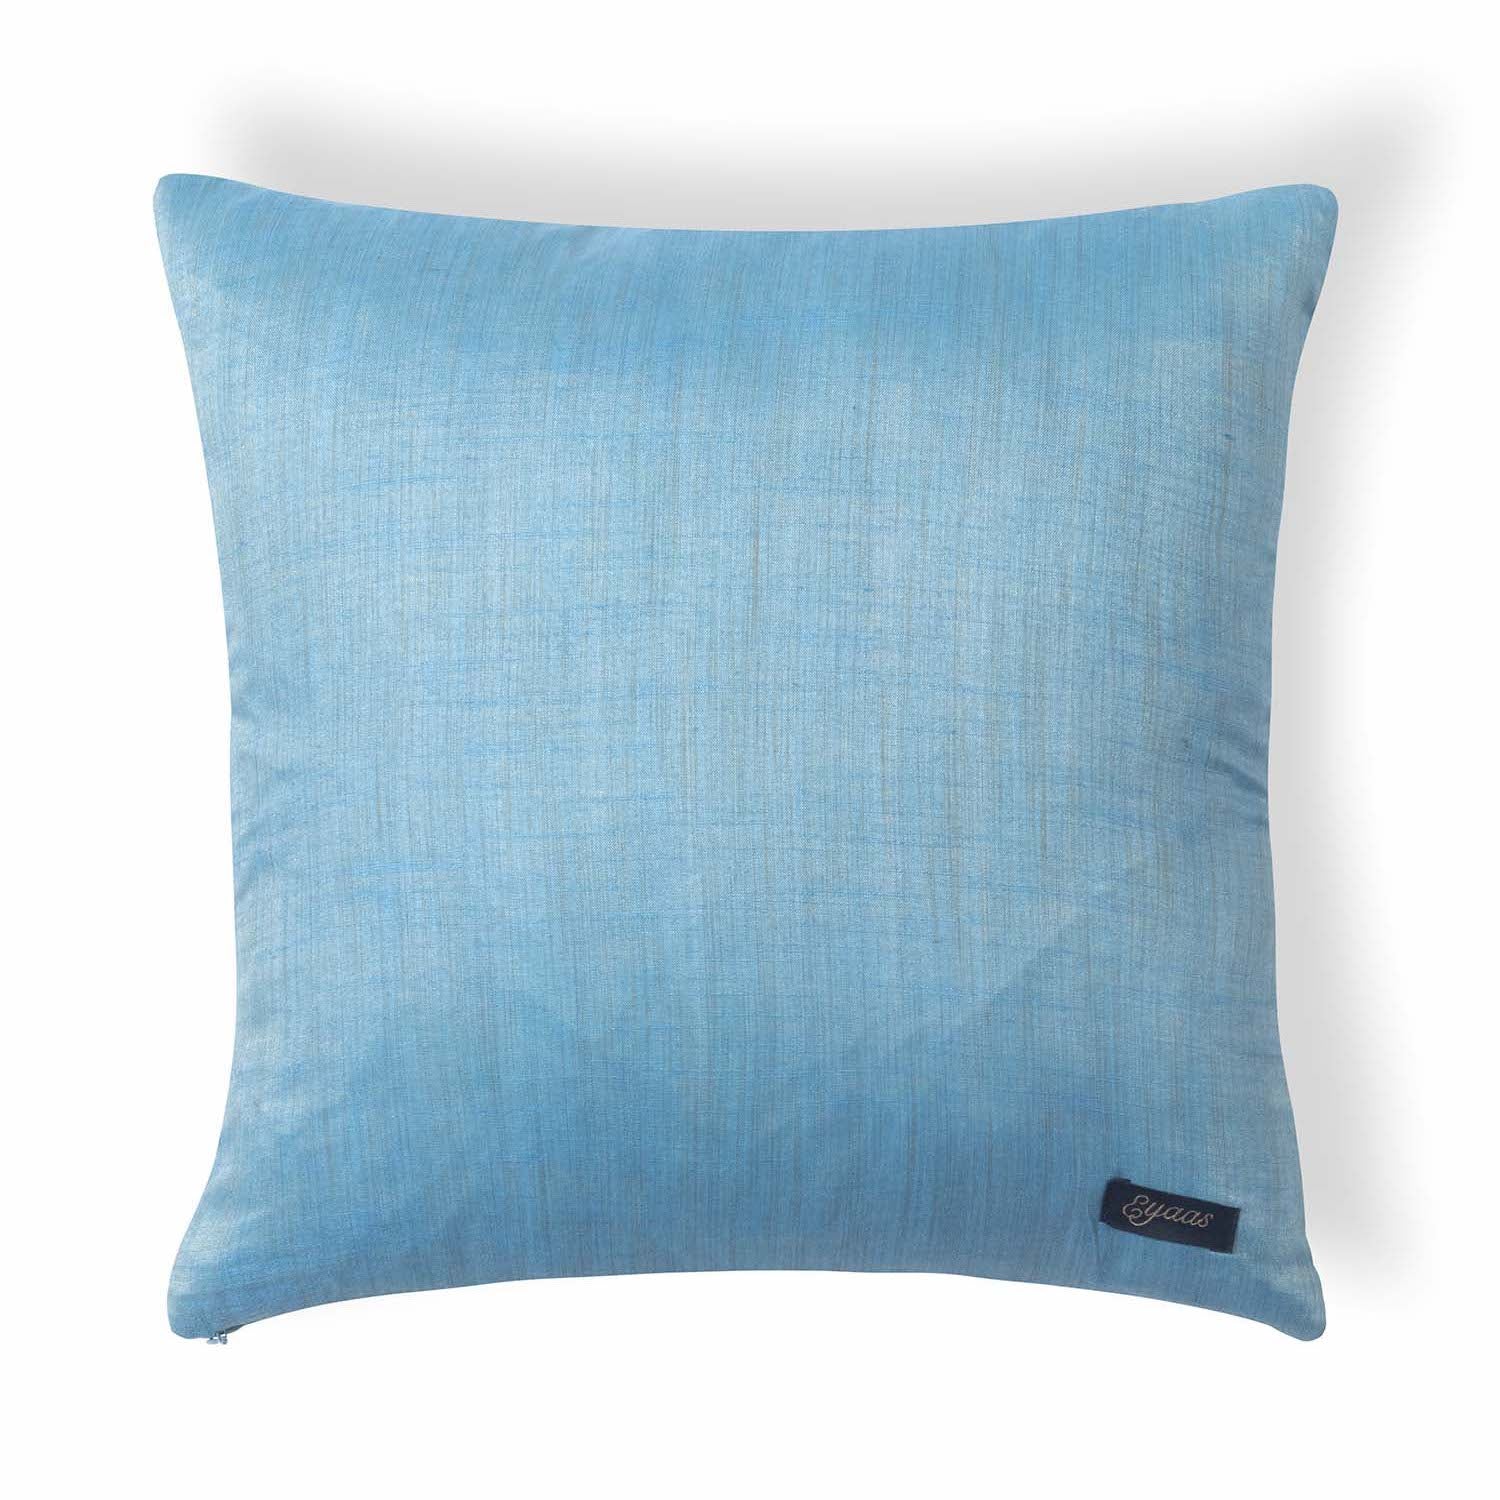 Handpainted Kalamkari Cushion Cover - 18x18